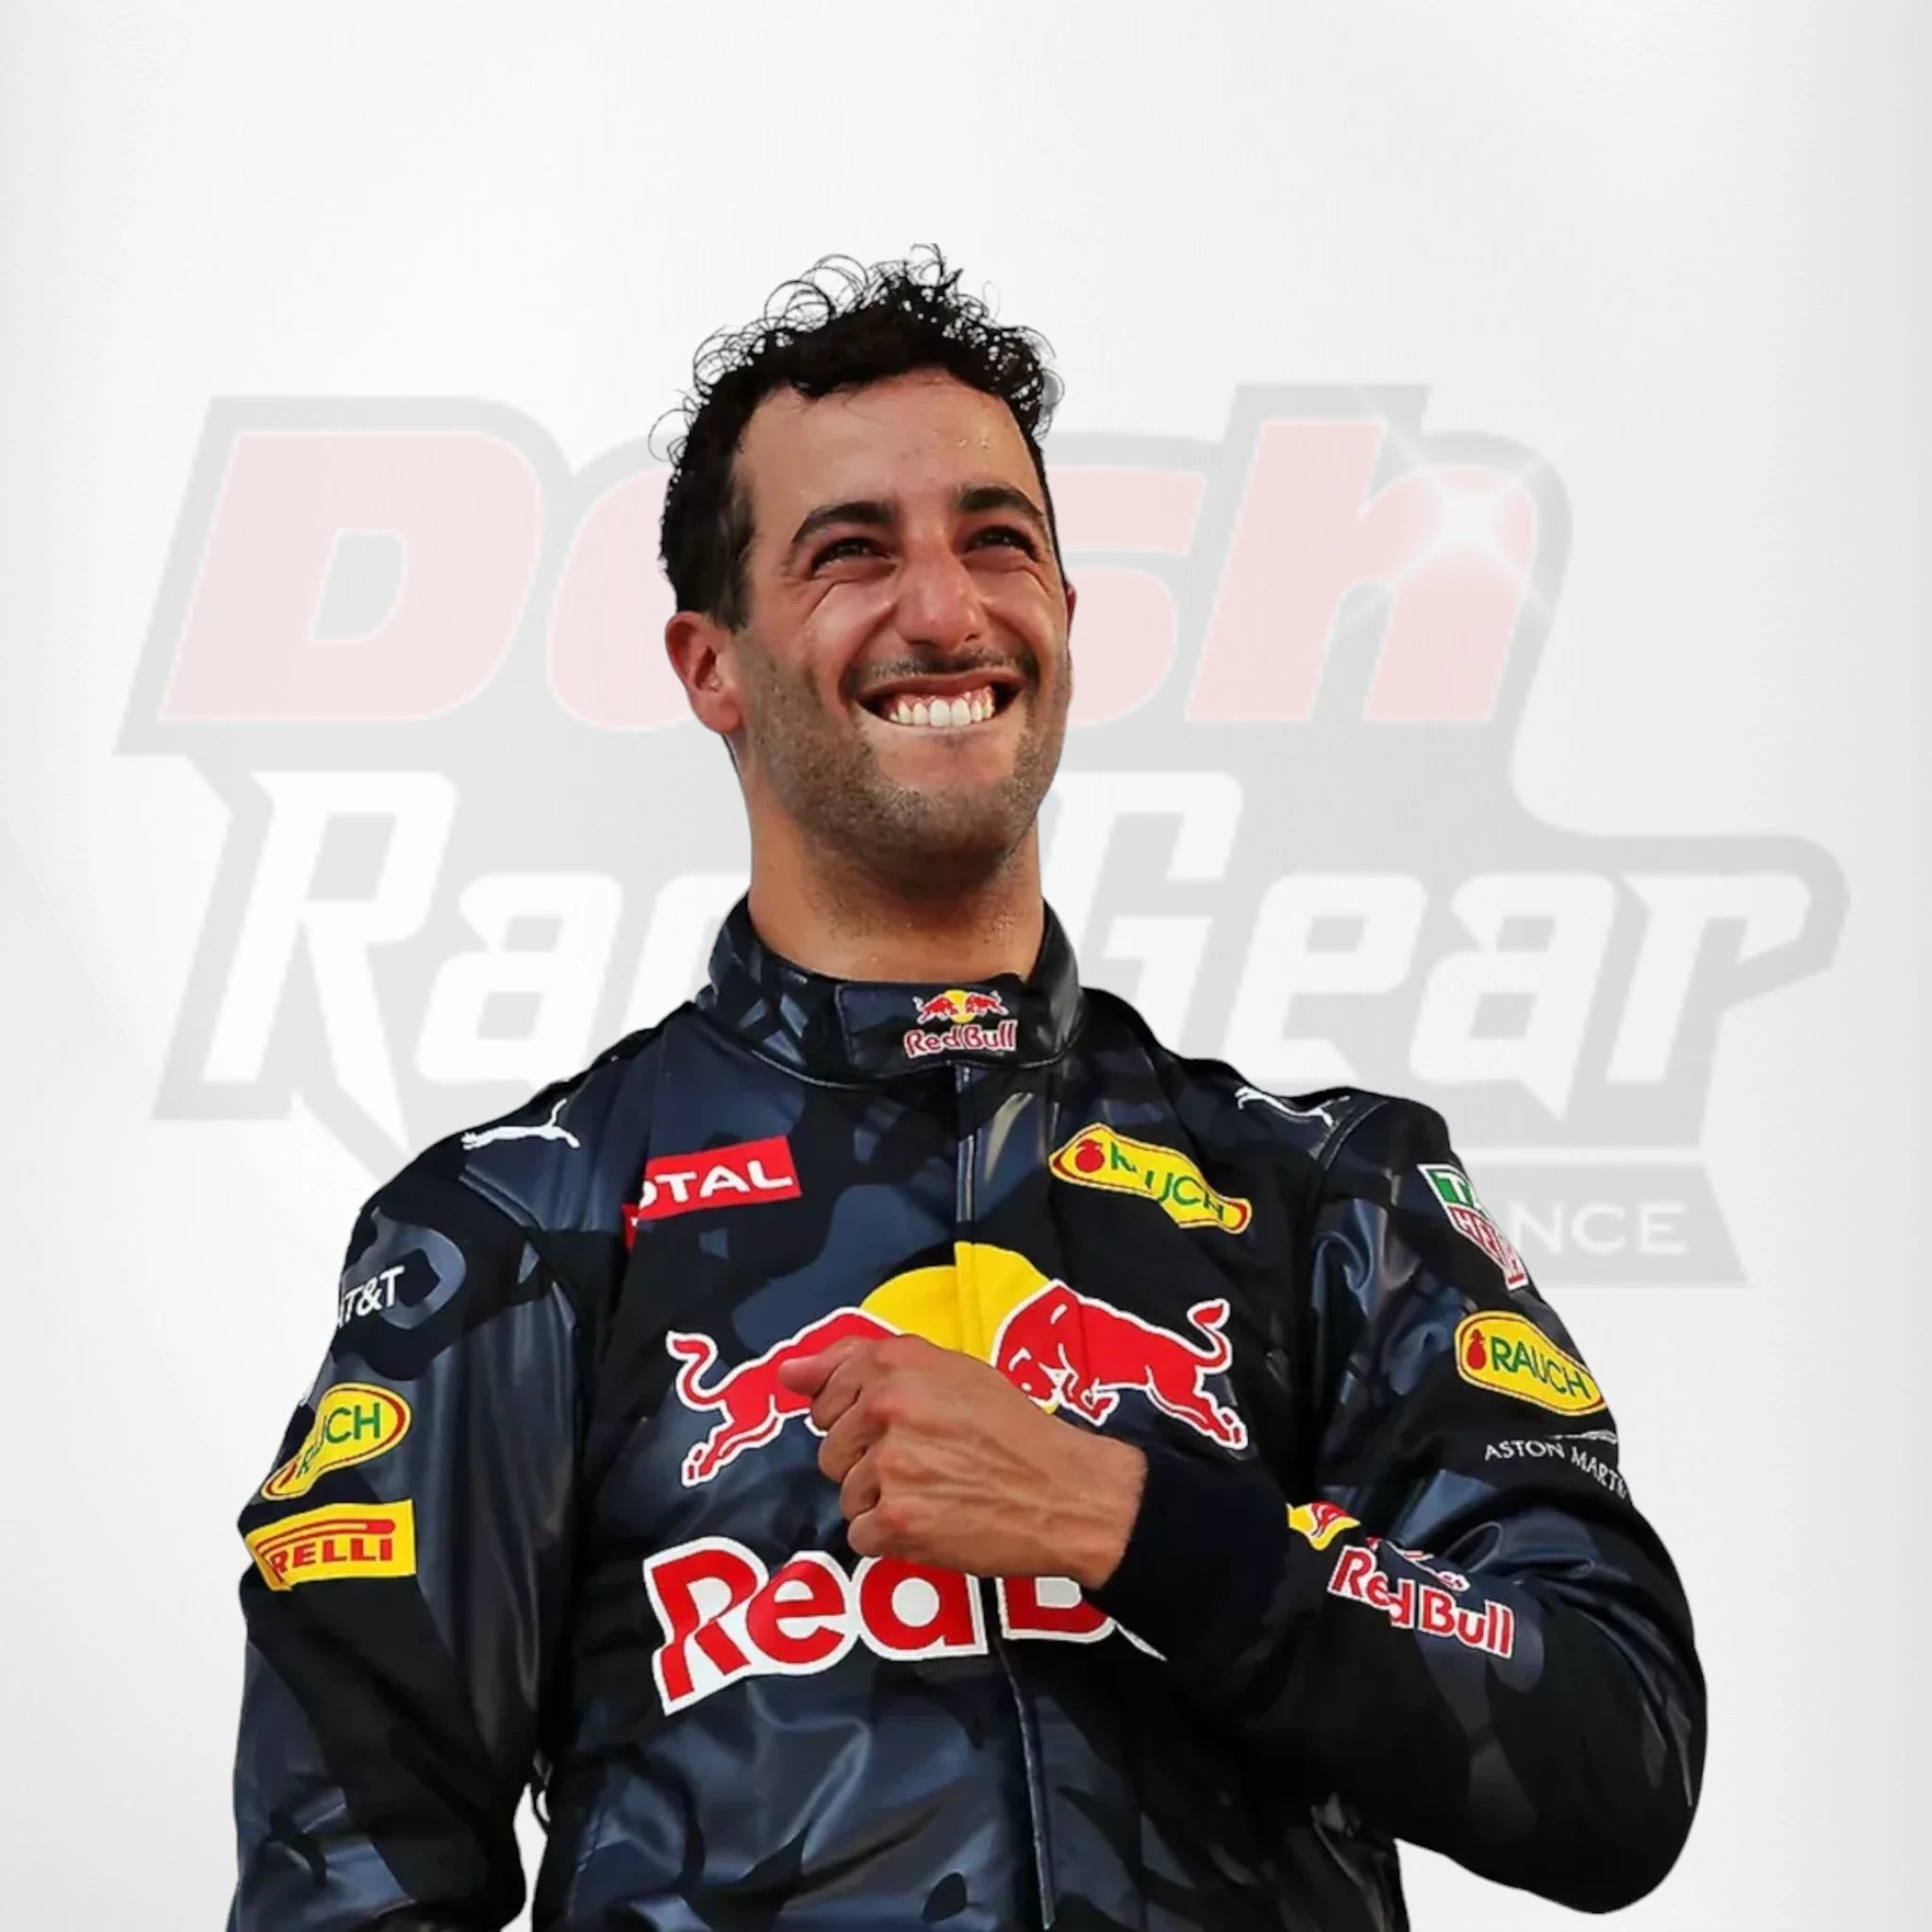 2016 Red Bull Daniel Ricciardo Formula 1  Race Suit